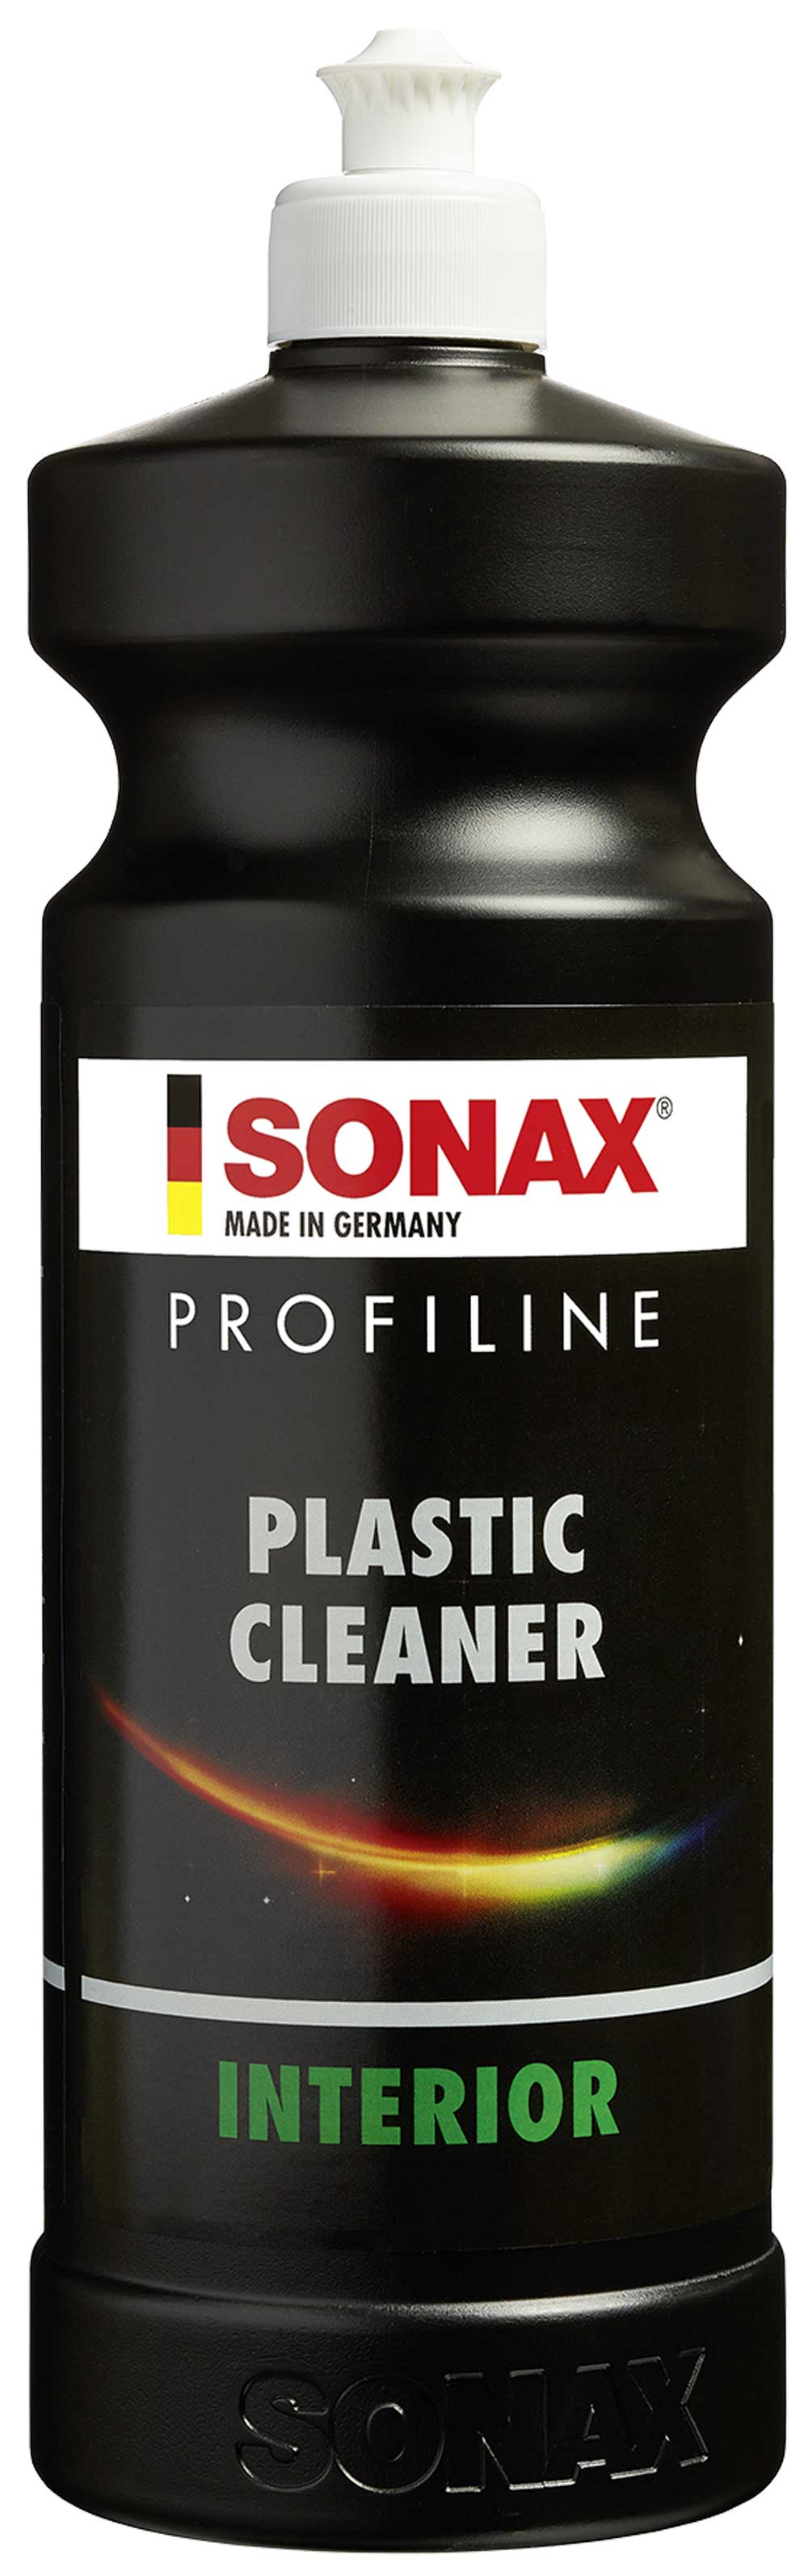 SONAX PROFILINE Plastic Cleaner Interior 1L